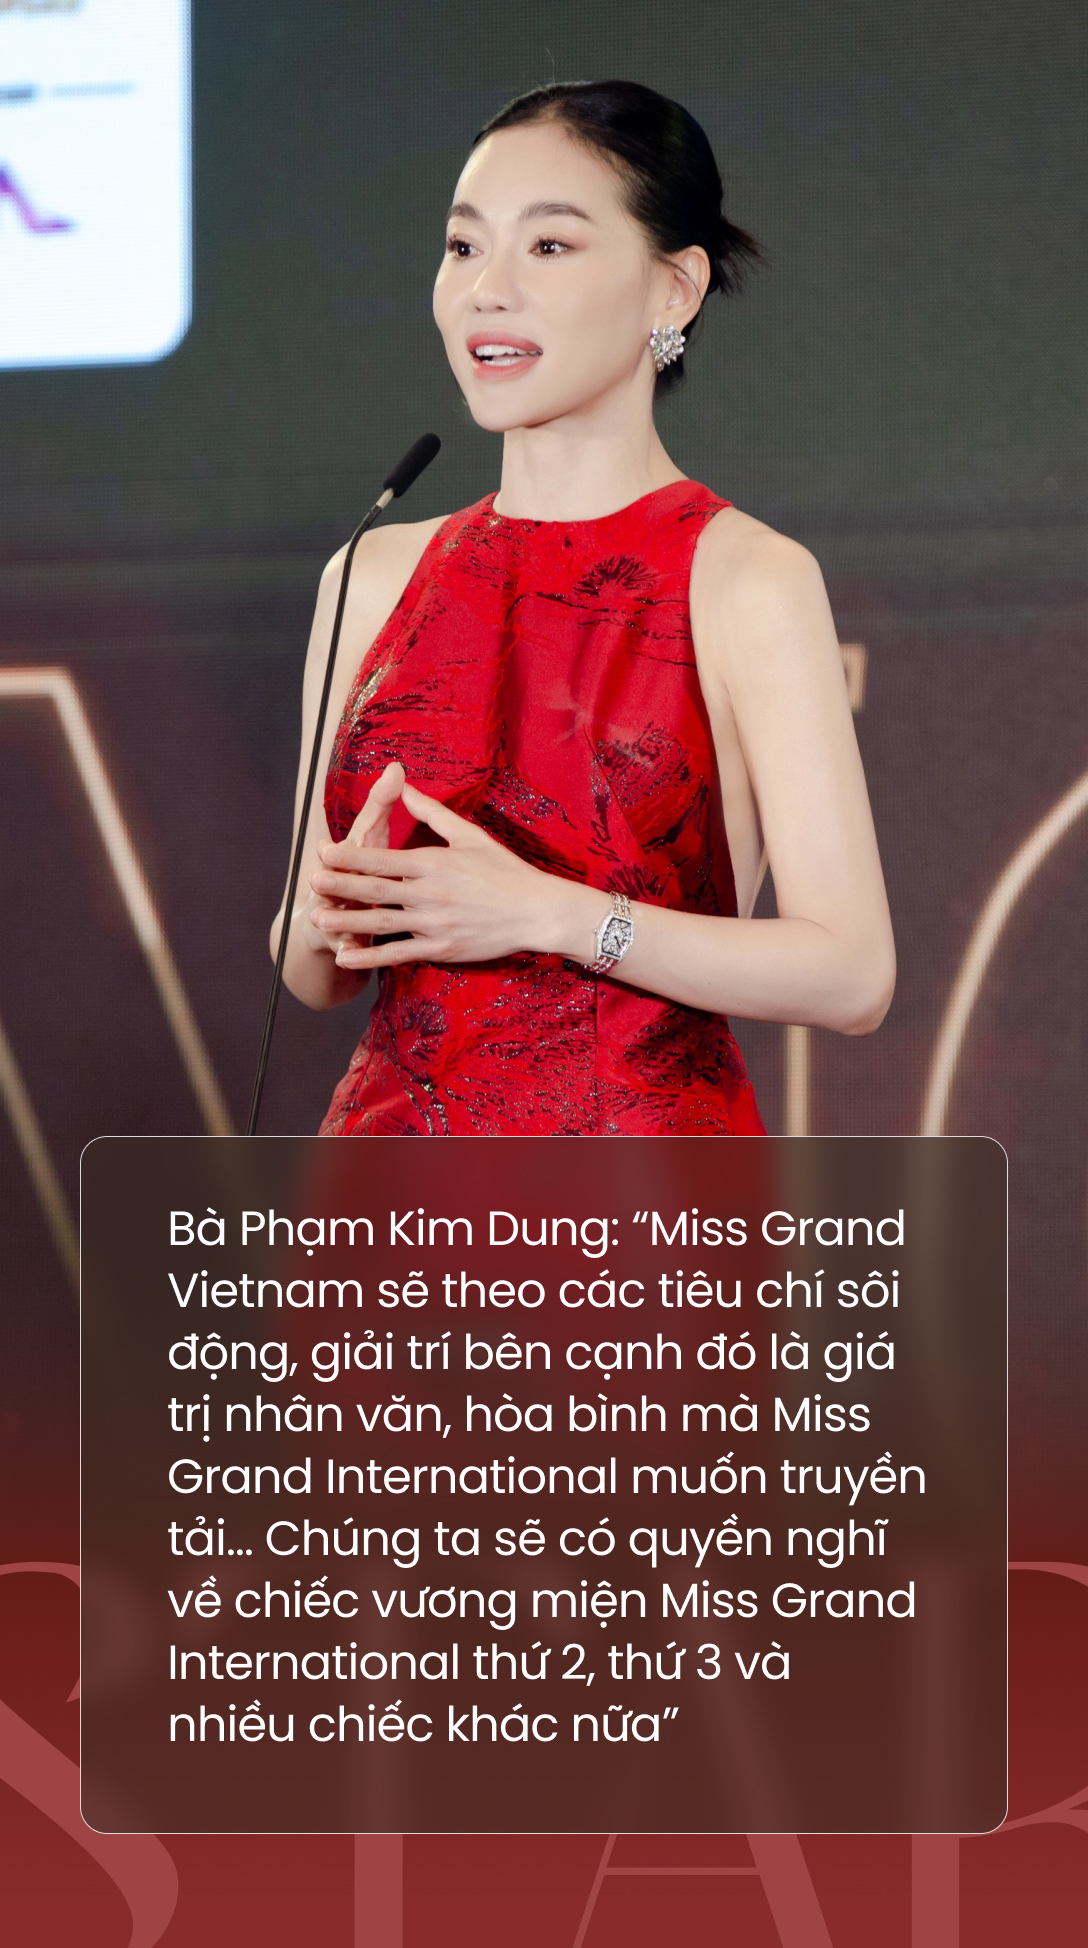 Những điều mới lạ giúp Miss Grand Vietnam trở thành cuộc thi nhan sắc đáng mong đợi - Ảnh 3.